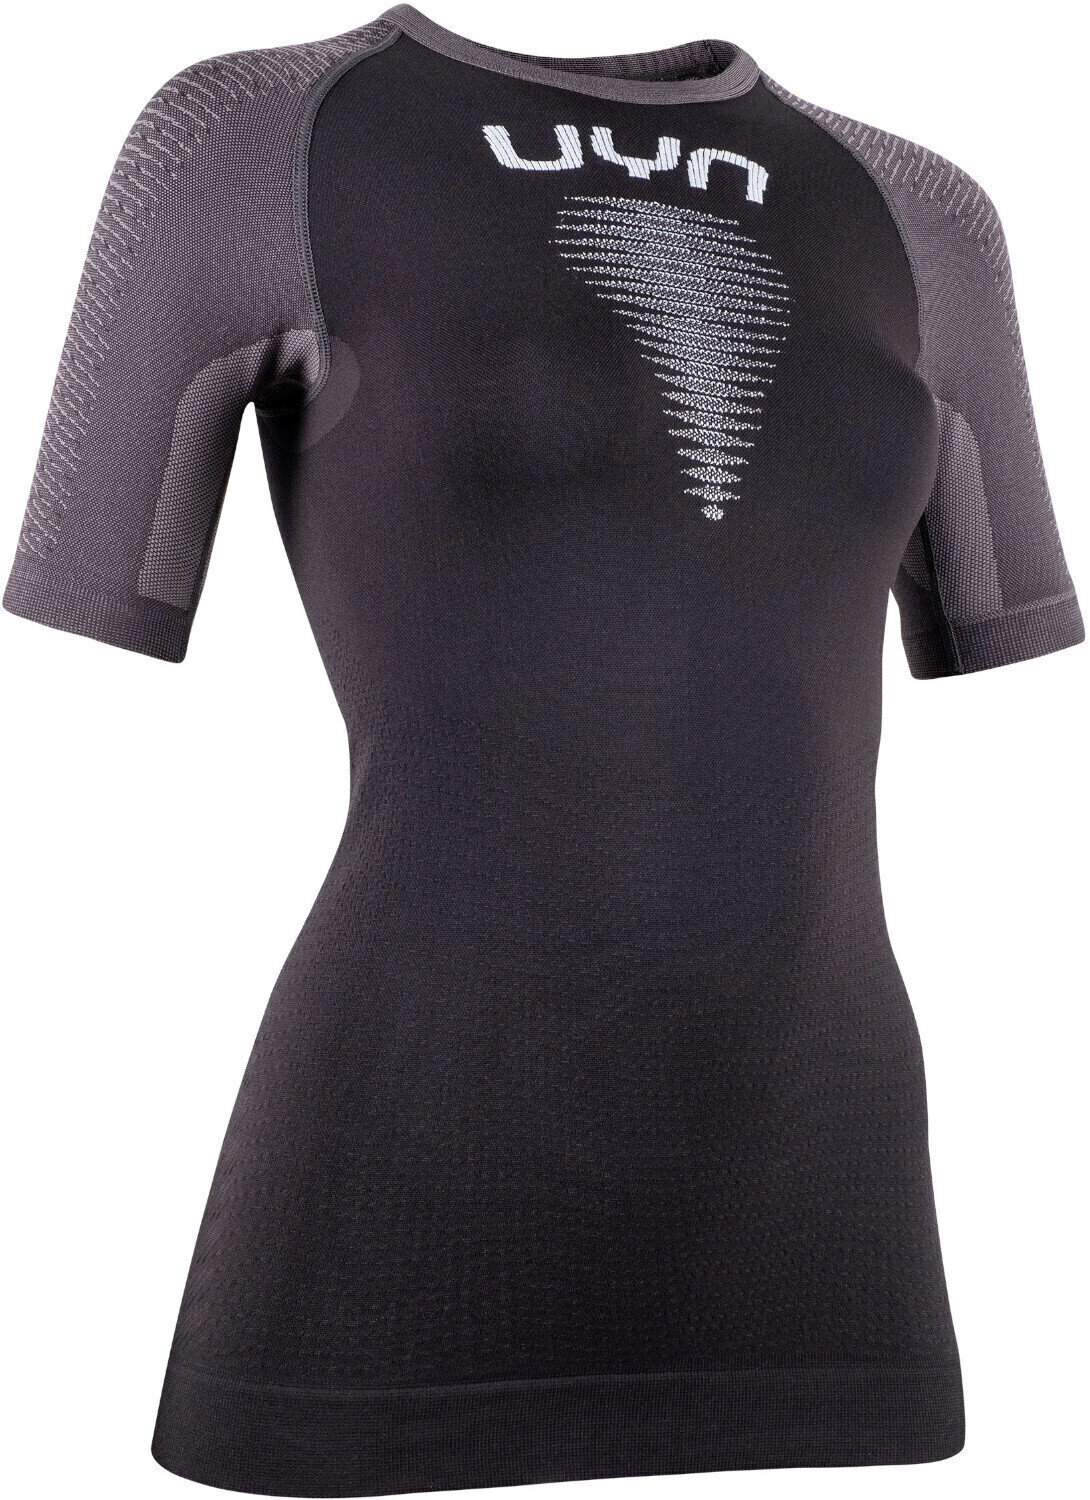 Chemise de course à manches courtes
 UYN Marathon Ow Shirt Black/Charcoal/White L/XL Chemise de course à manches courtes